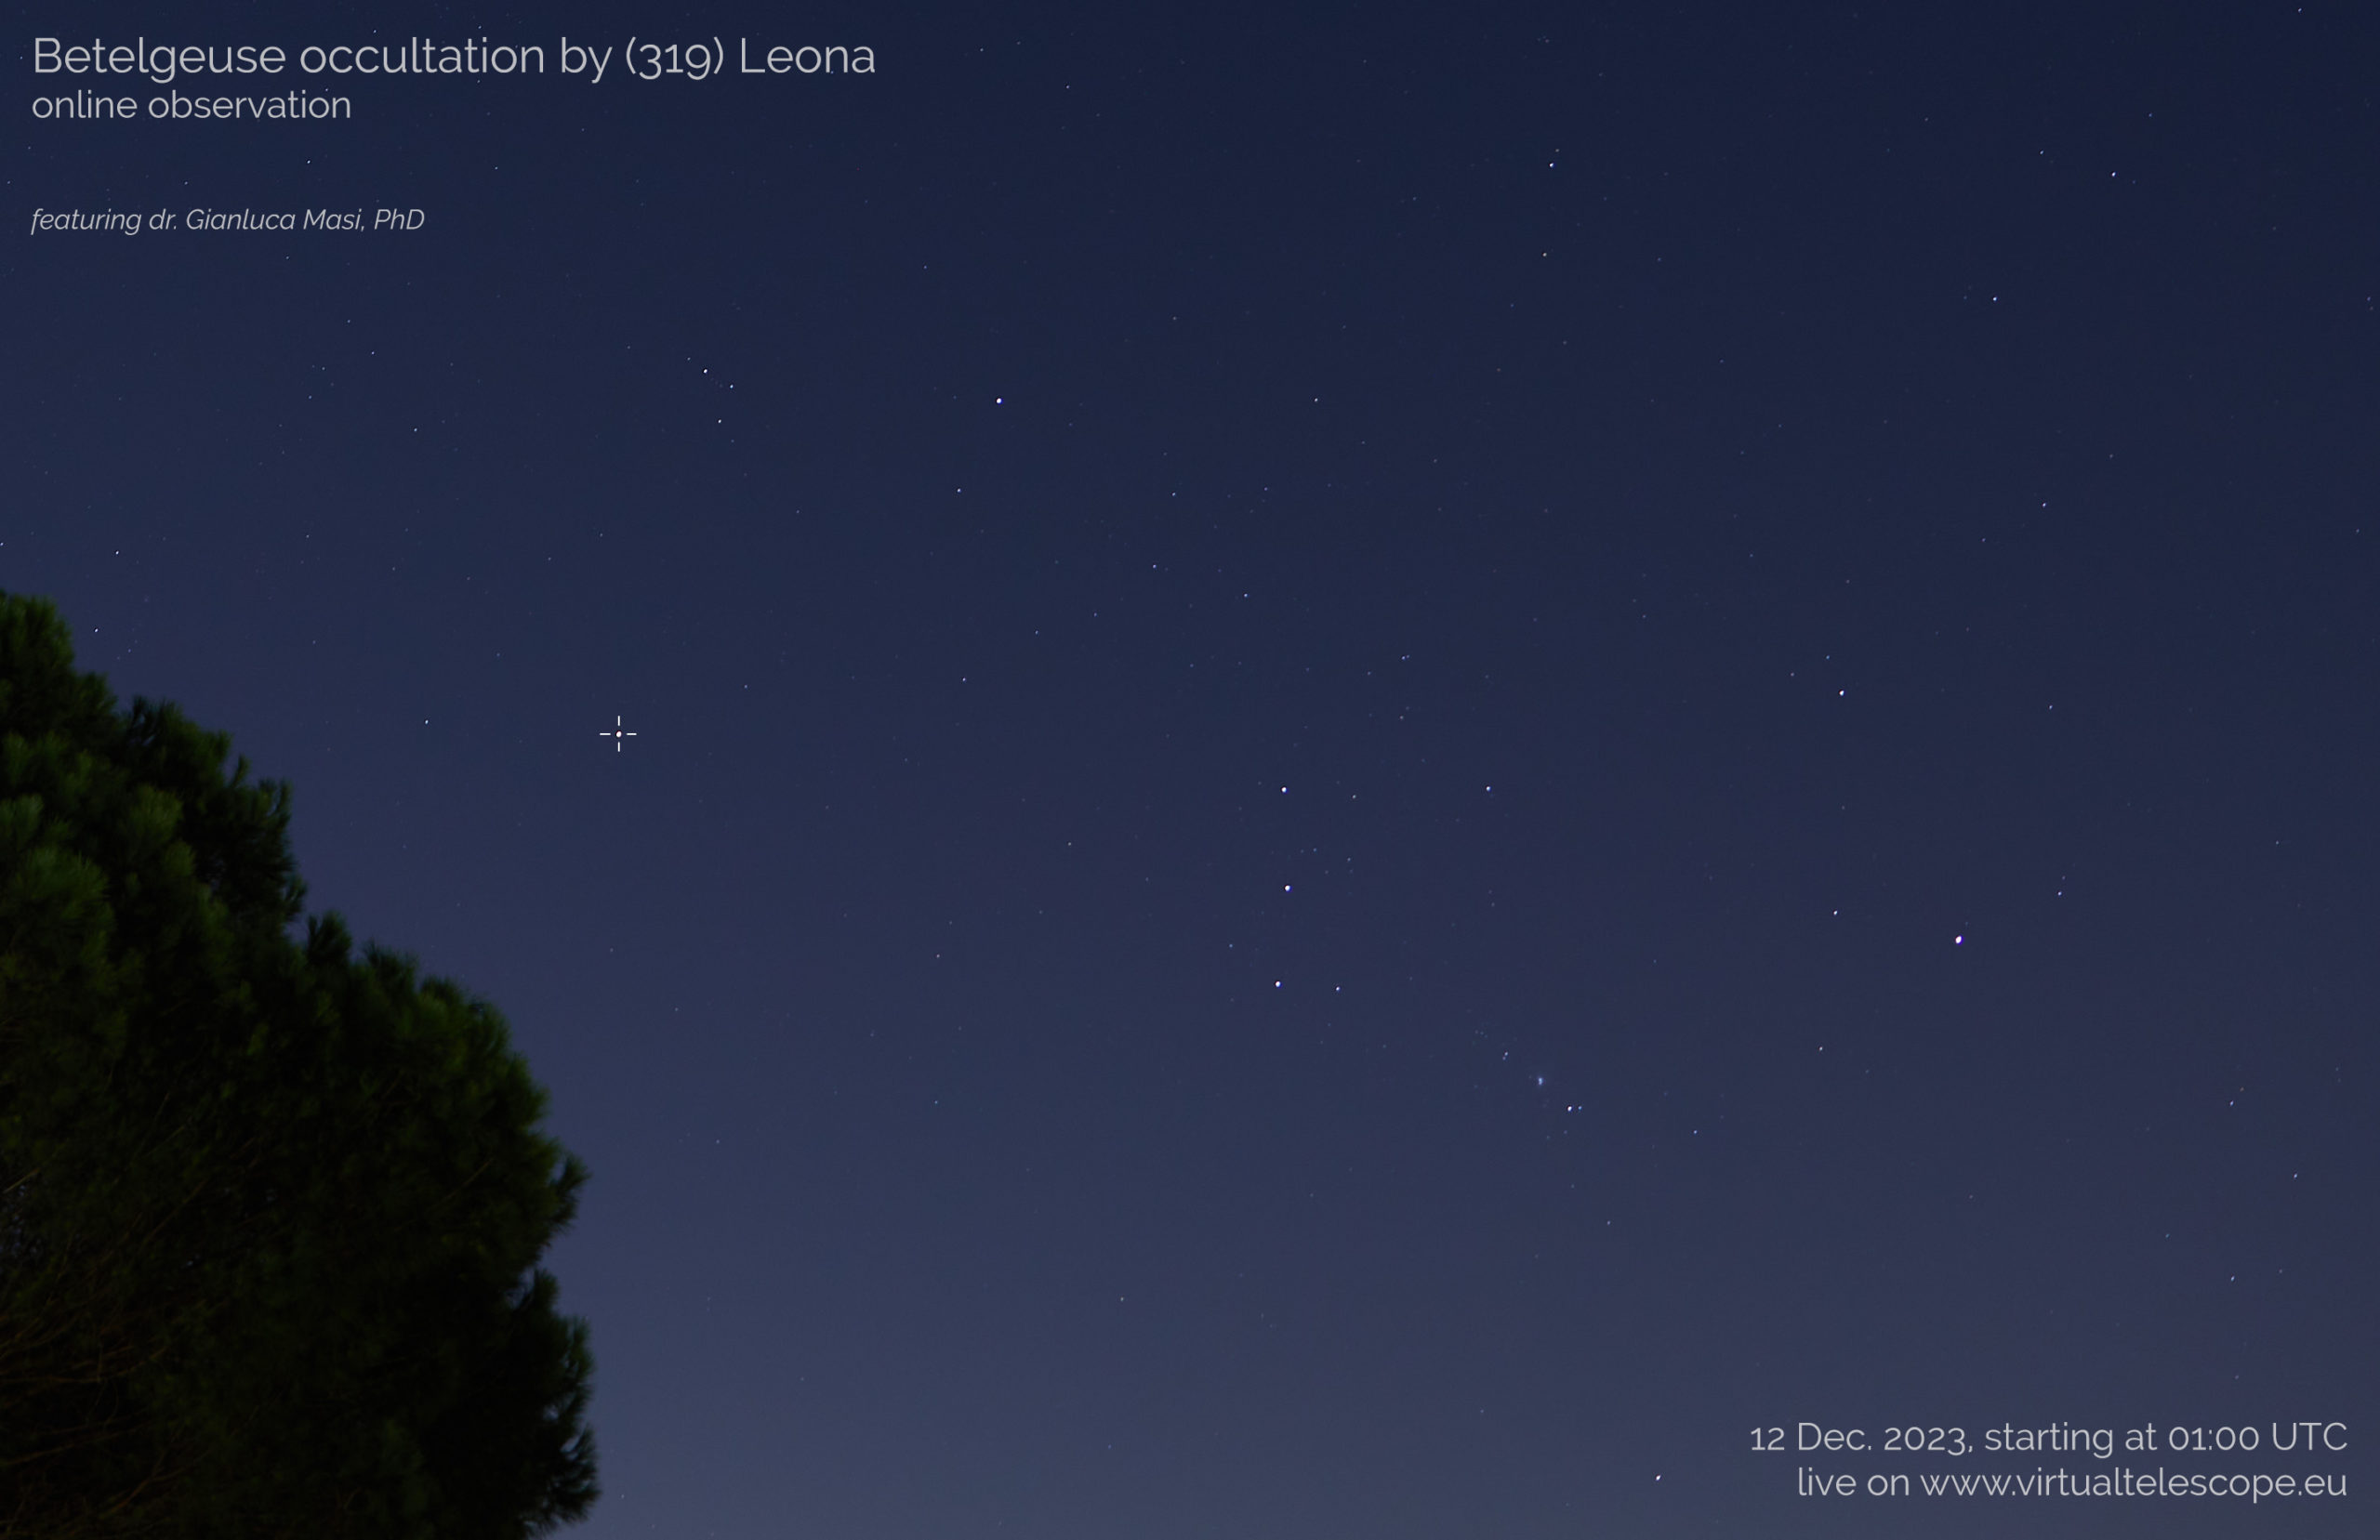 La rarísima ocultación de Betelgeuse por el asteroide (319) Leona: evento online – 12 de diciembre de 2023